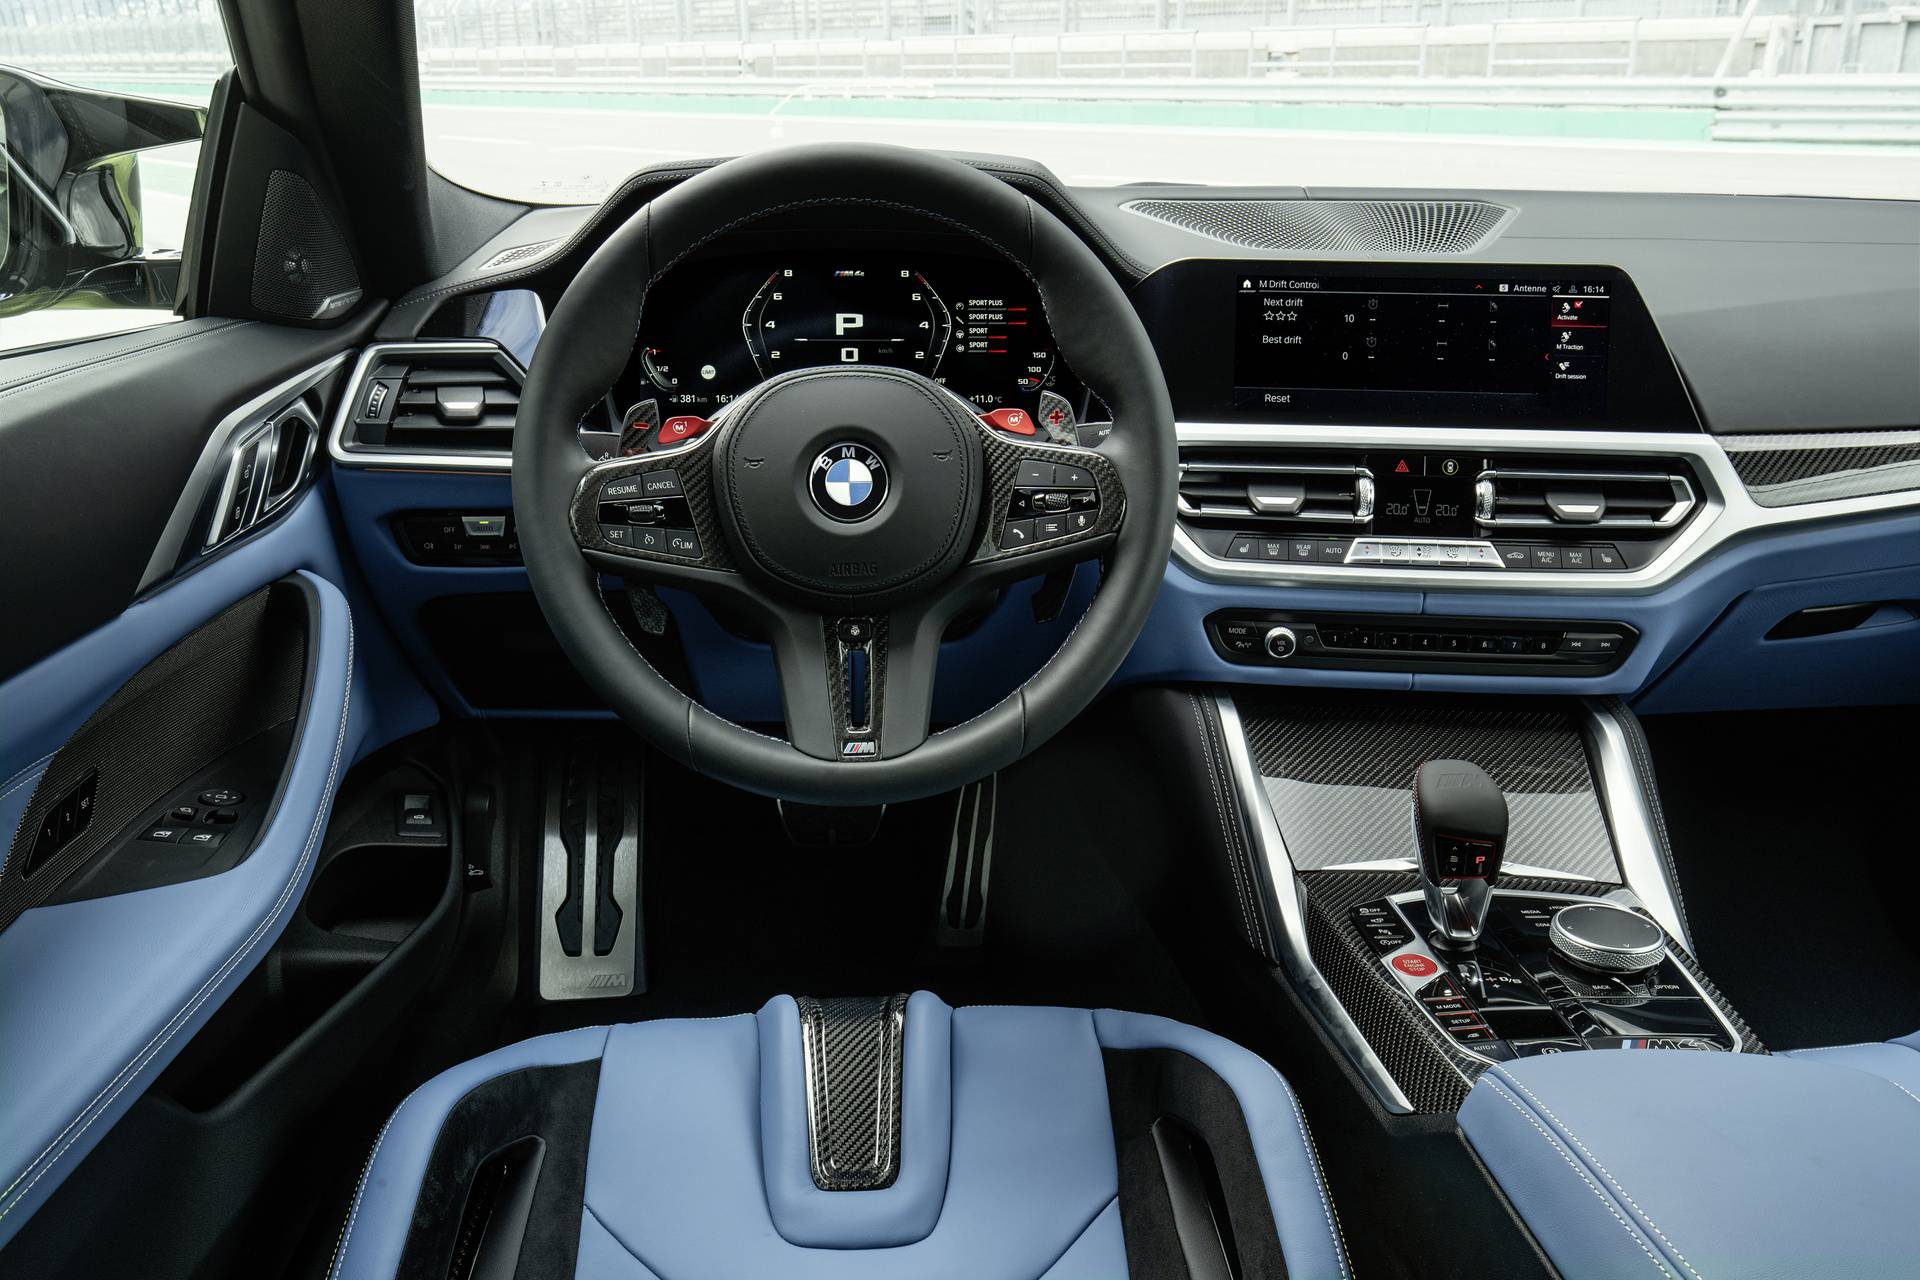 Stigla je nova generacija najslavnijeg modela BMW-a